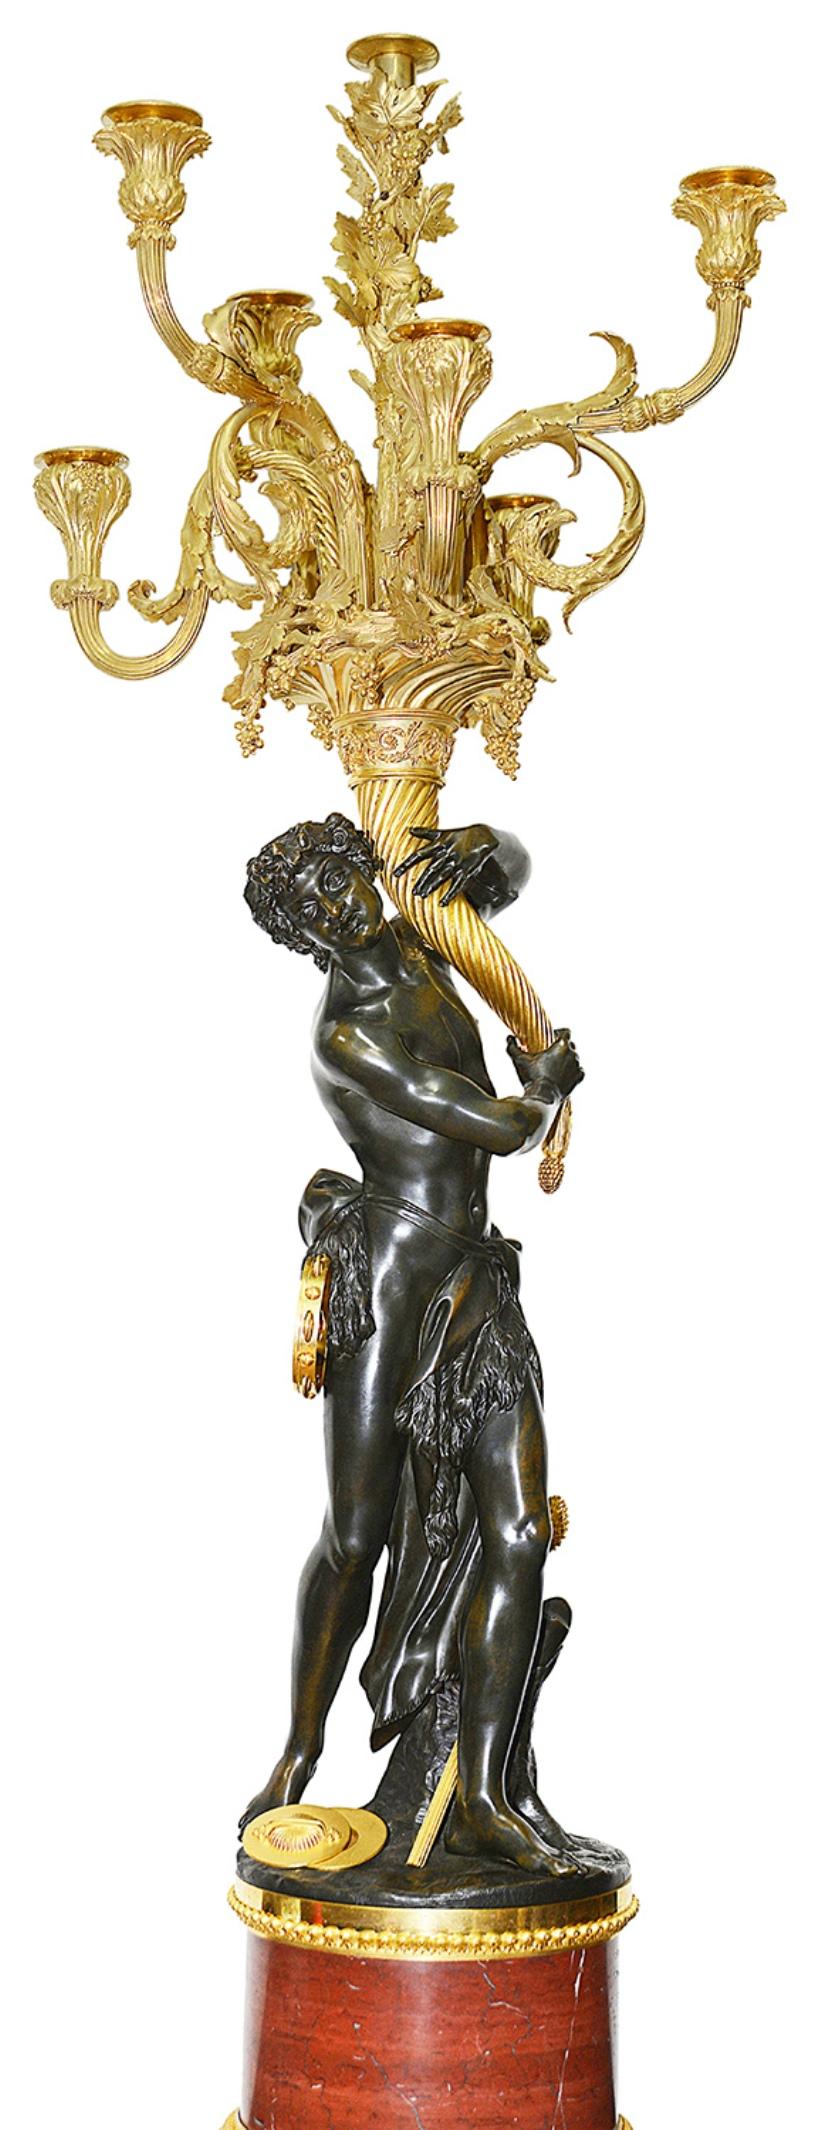 Rare paire de candélabres de style Louis XVI du XIXe siècle en bronze et bronze doré. Chaque candélabre est orné de vierges en bronze patiné tenant une corne d'abondance dorée et d'un candélabre à huit branches feuillagées, reposant sur des socles